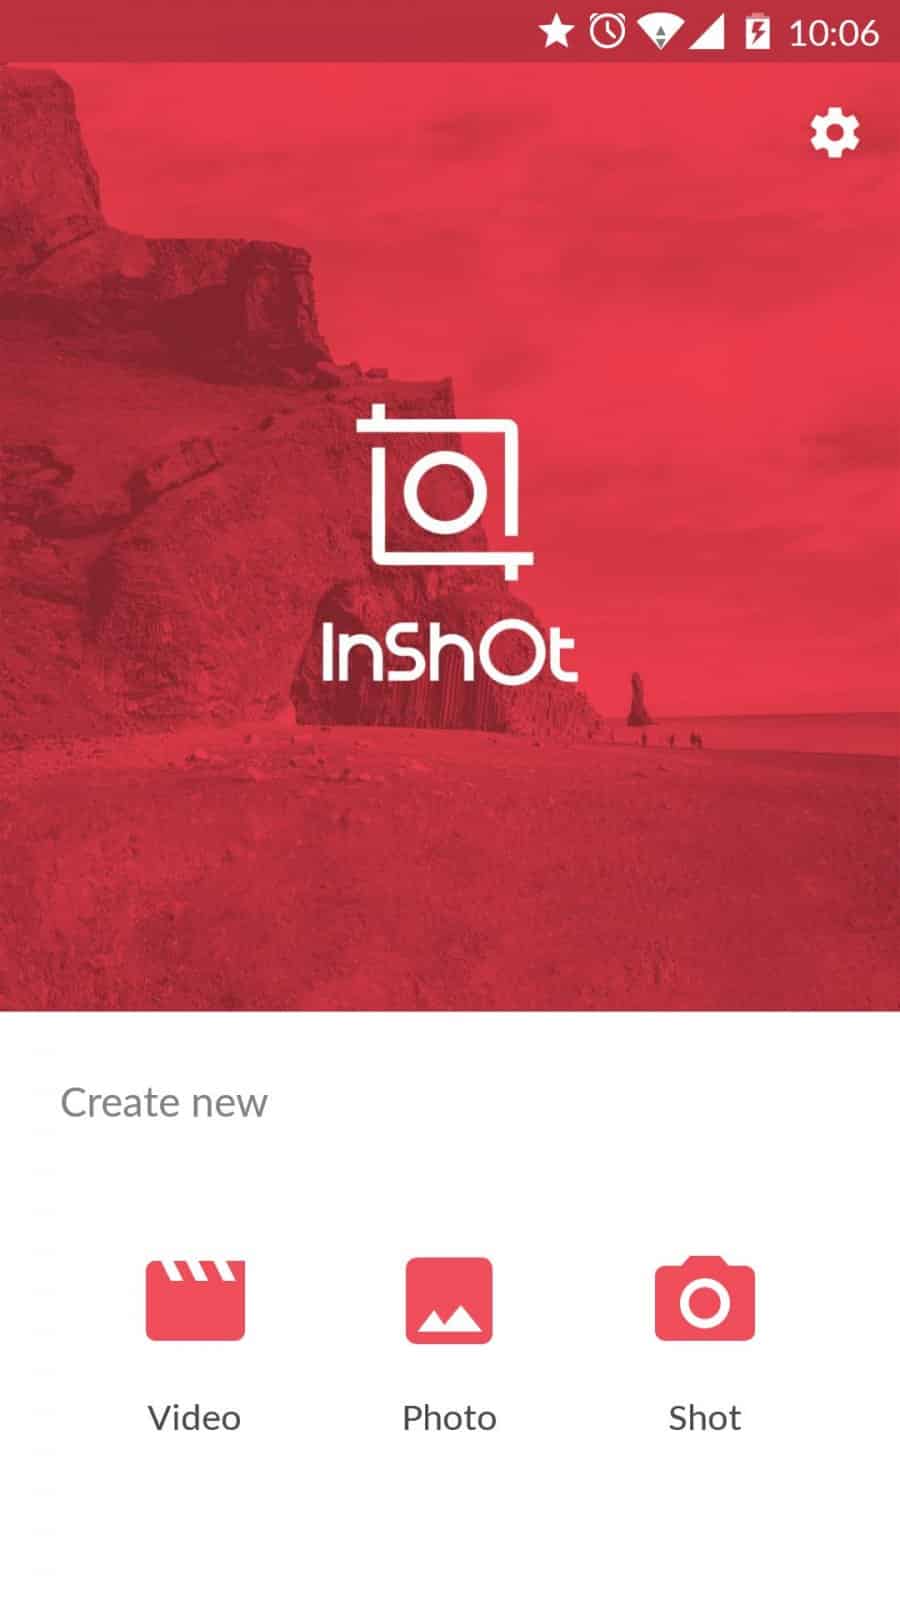 membuka-aplikasi-Inshot